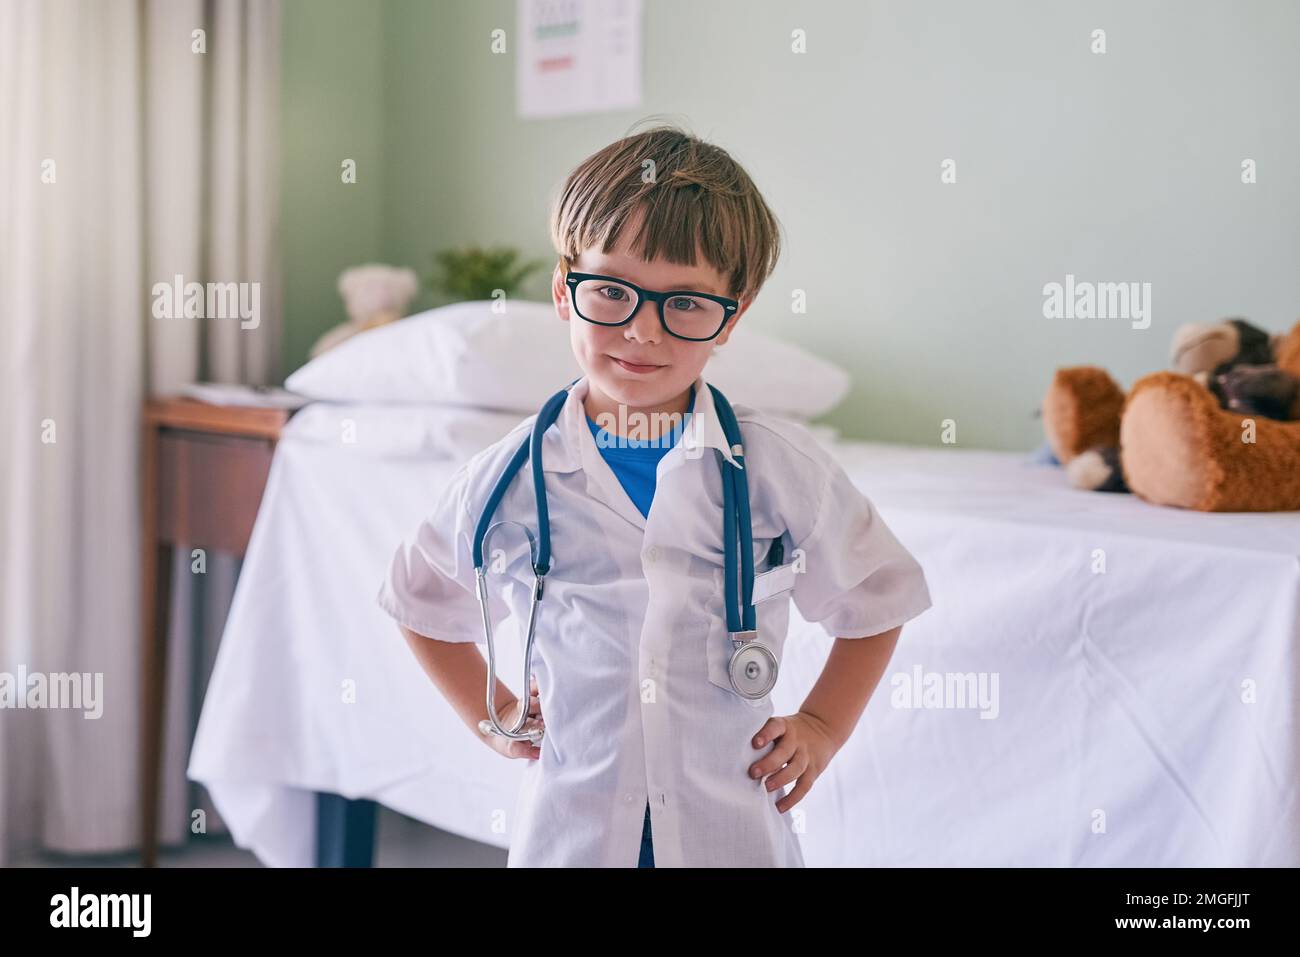 Coltivare i loro interessi. un adorabile ragazzino vestito da medico. Foto Stock